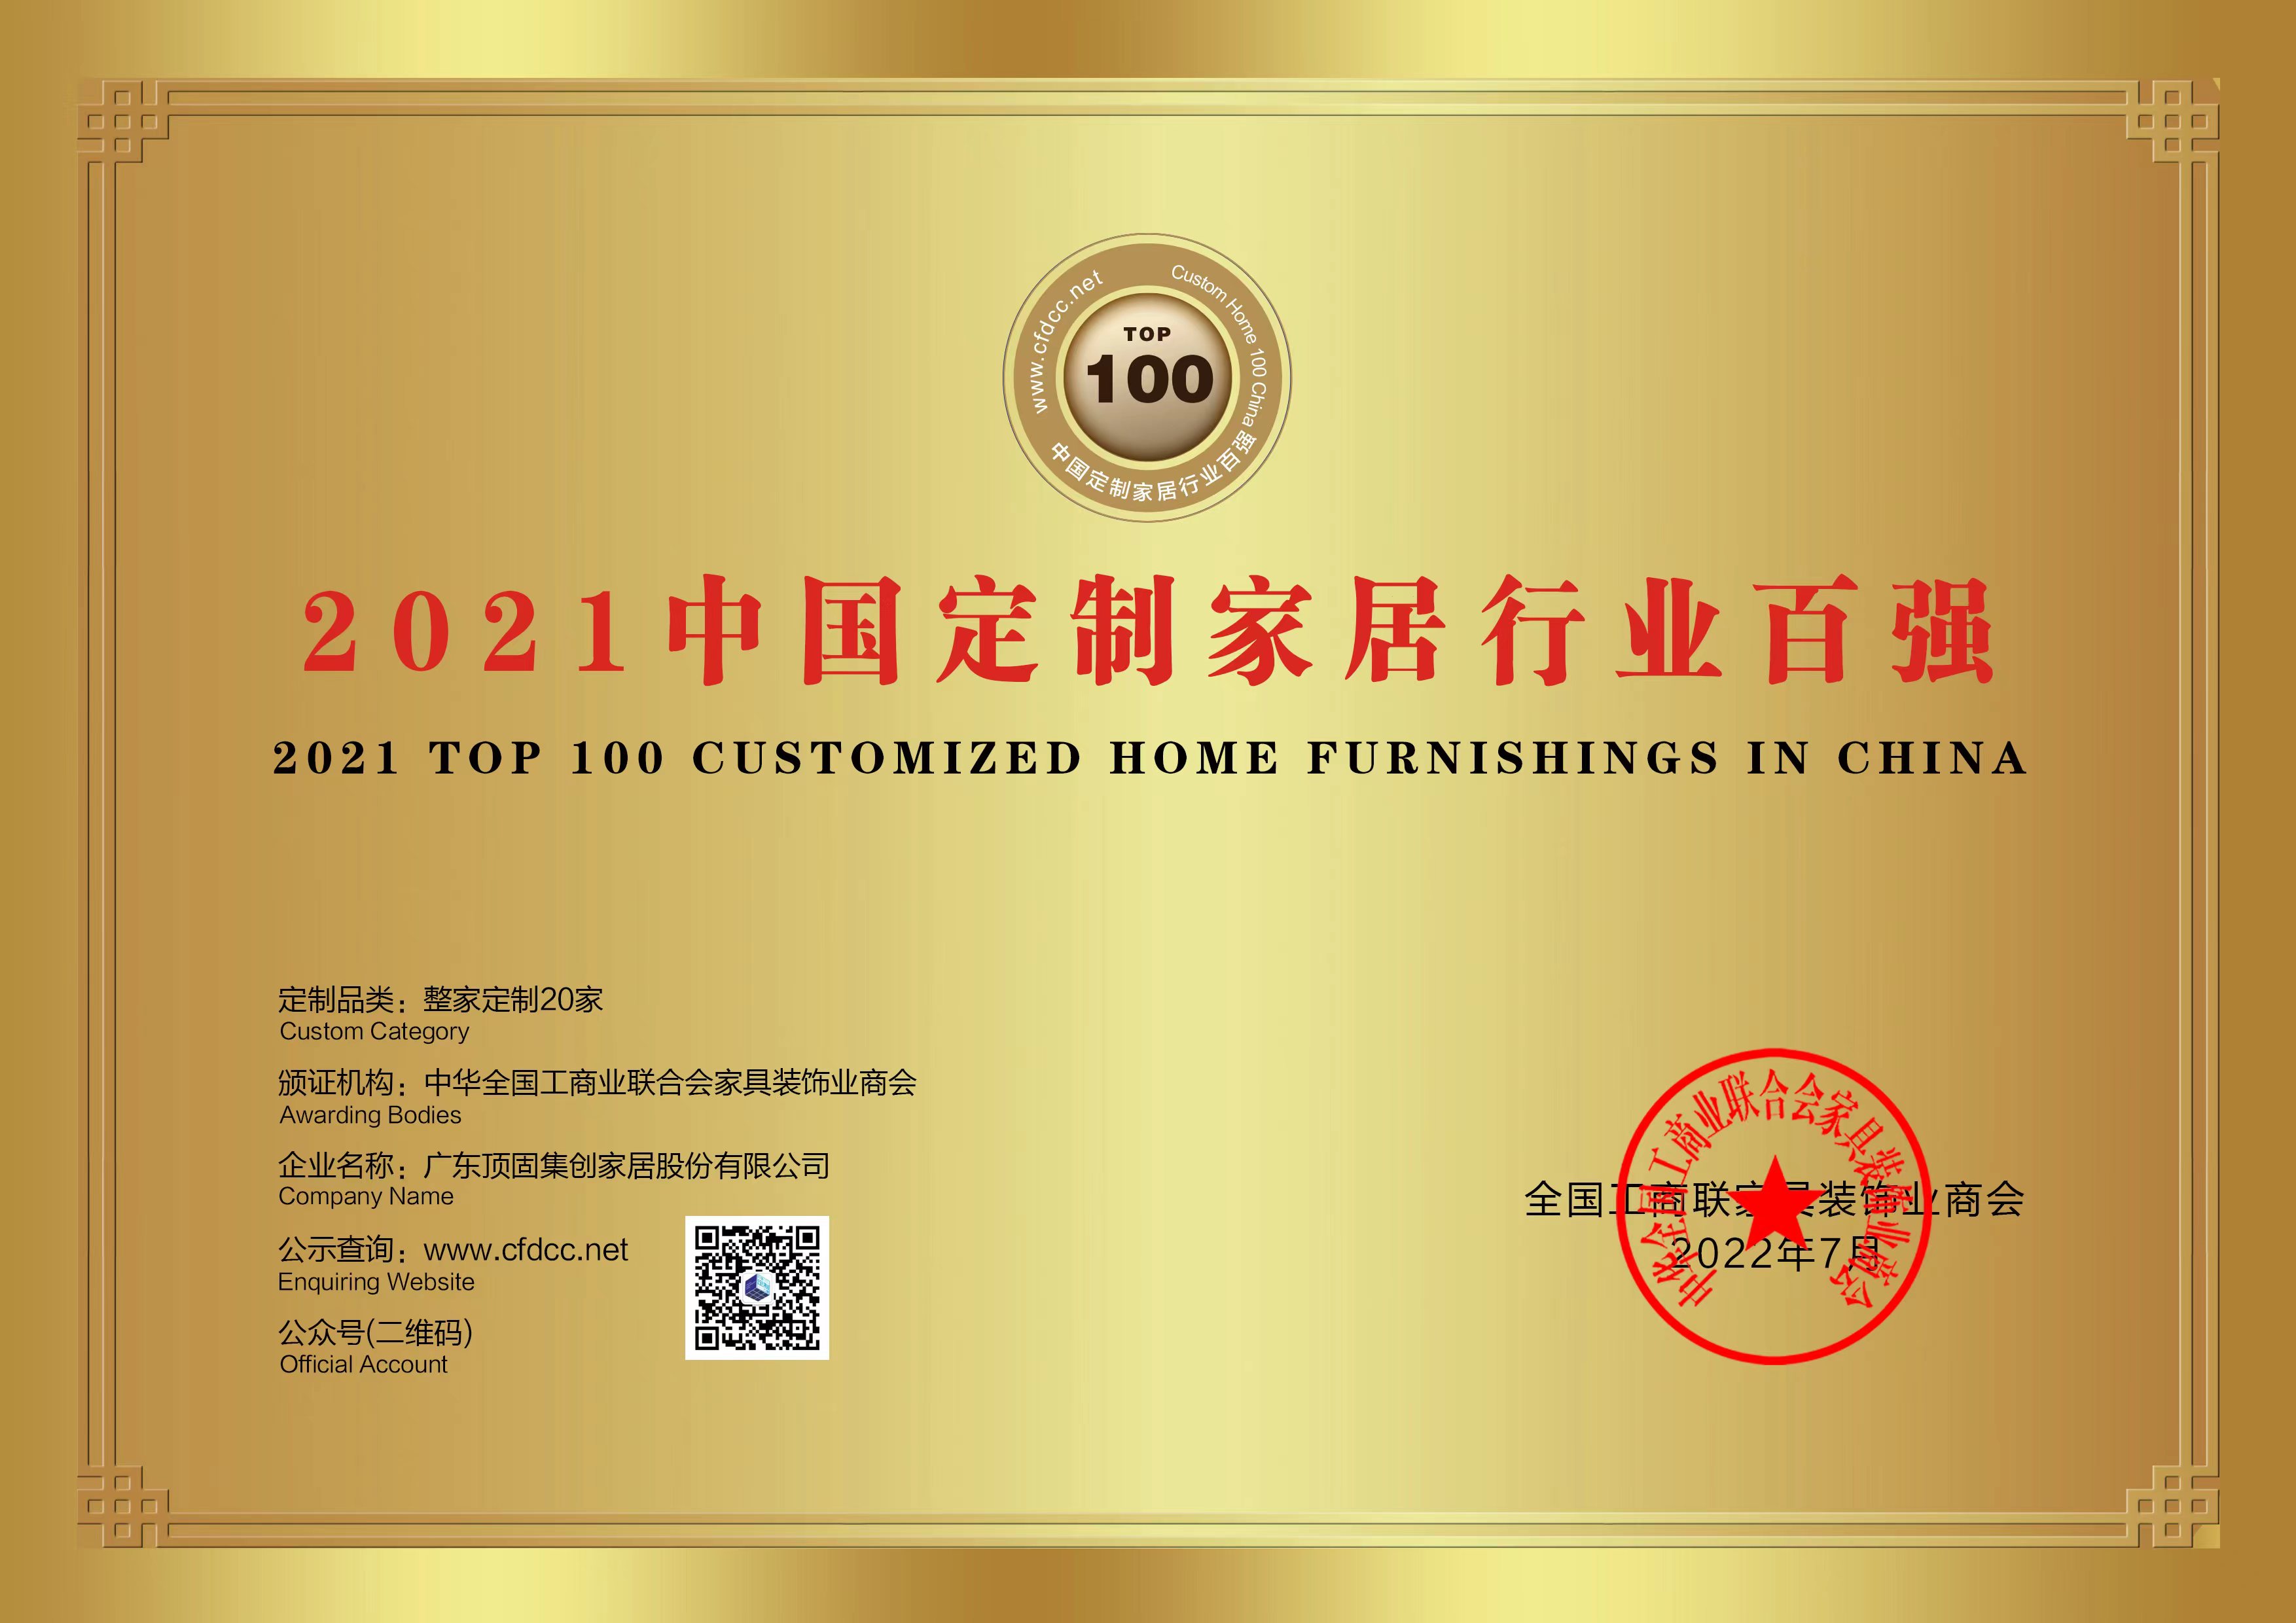 頂固登上“2021年中國定制家居行業百強品牌企業”榜單